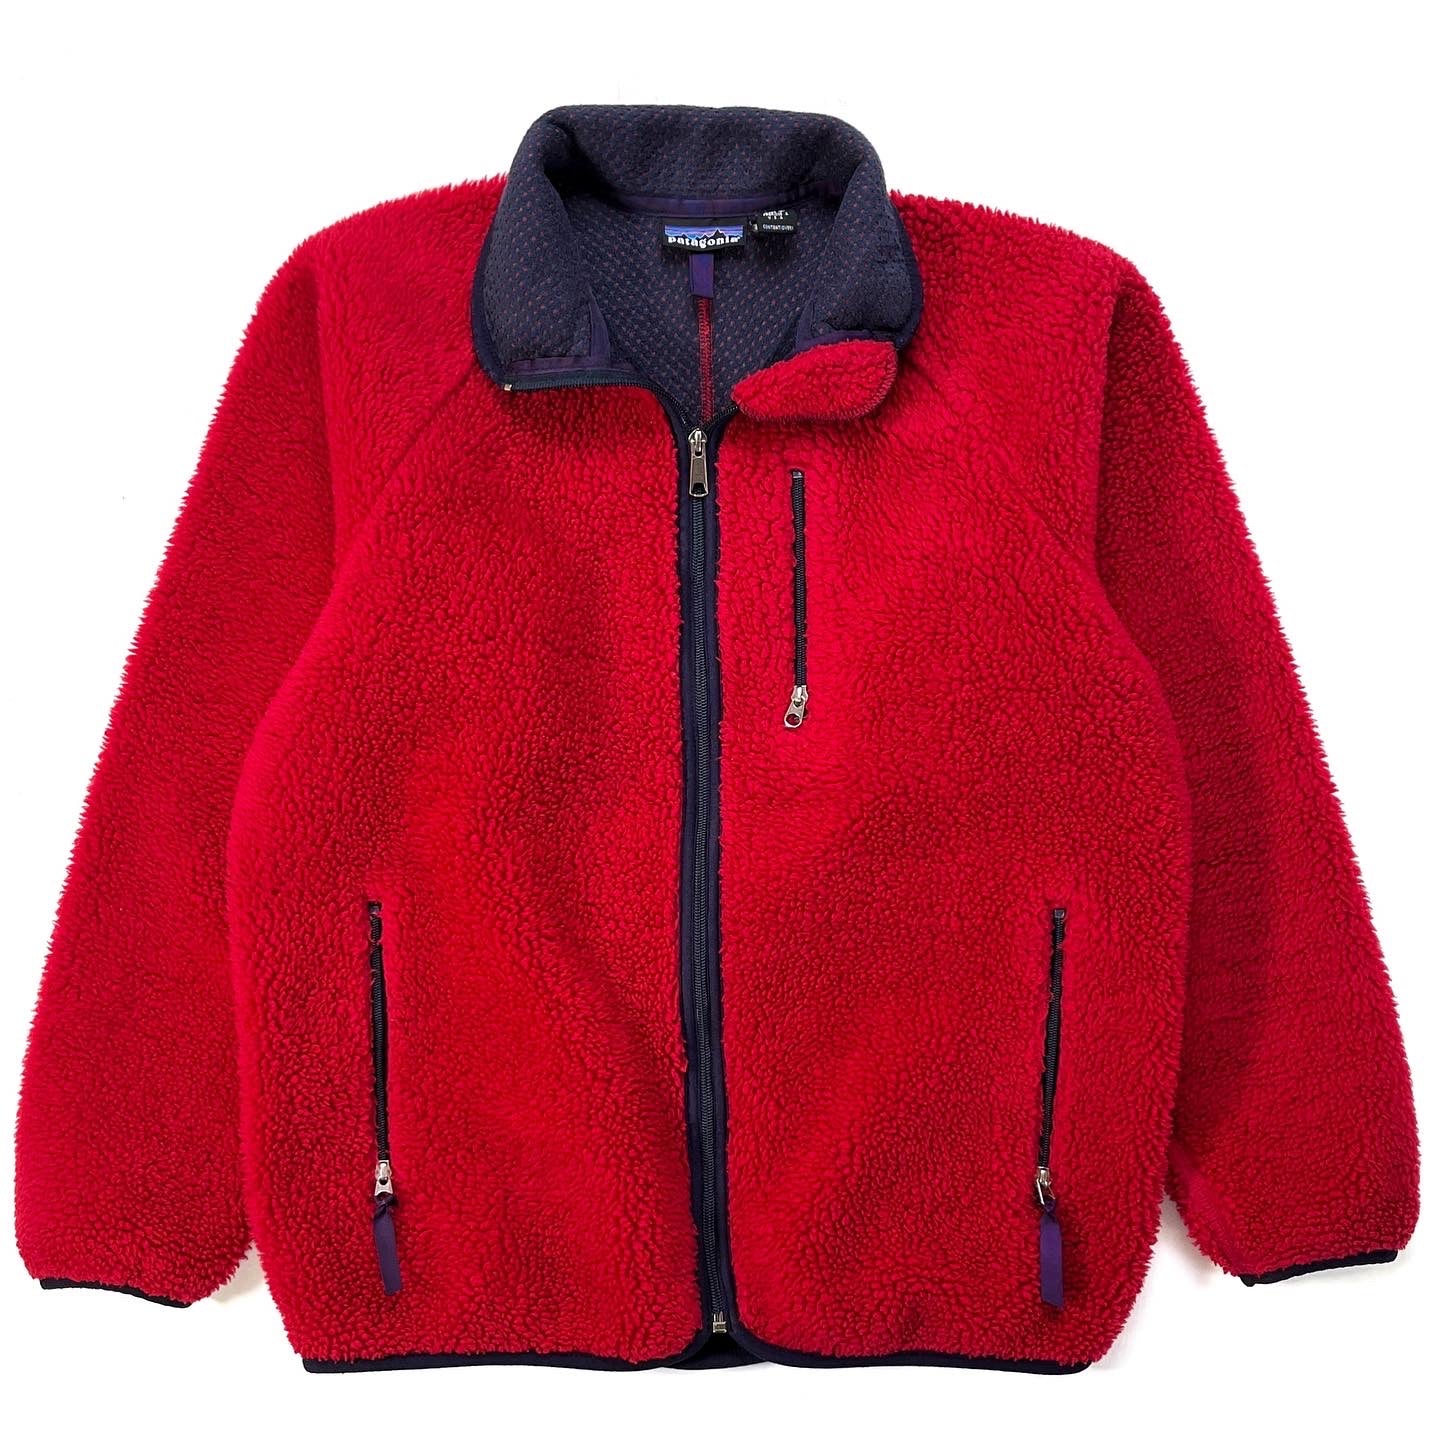 Bronson Sherpa Fleece Jacket Classic Retro 1989 Outdoor Full Zip-Up  Cardigan